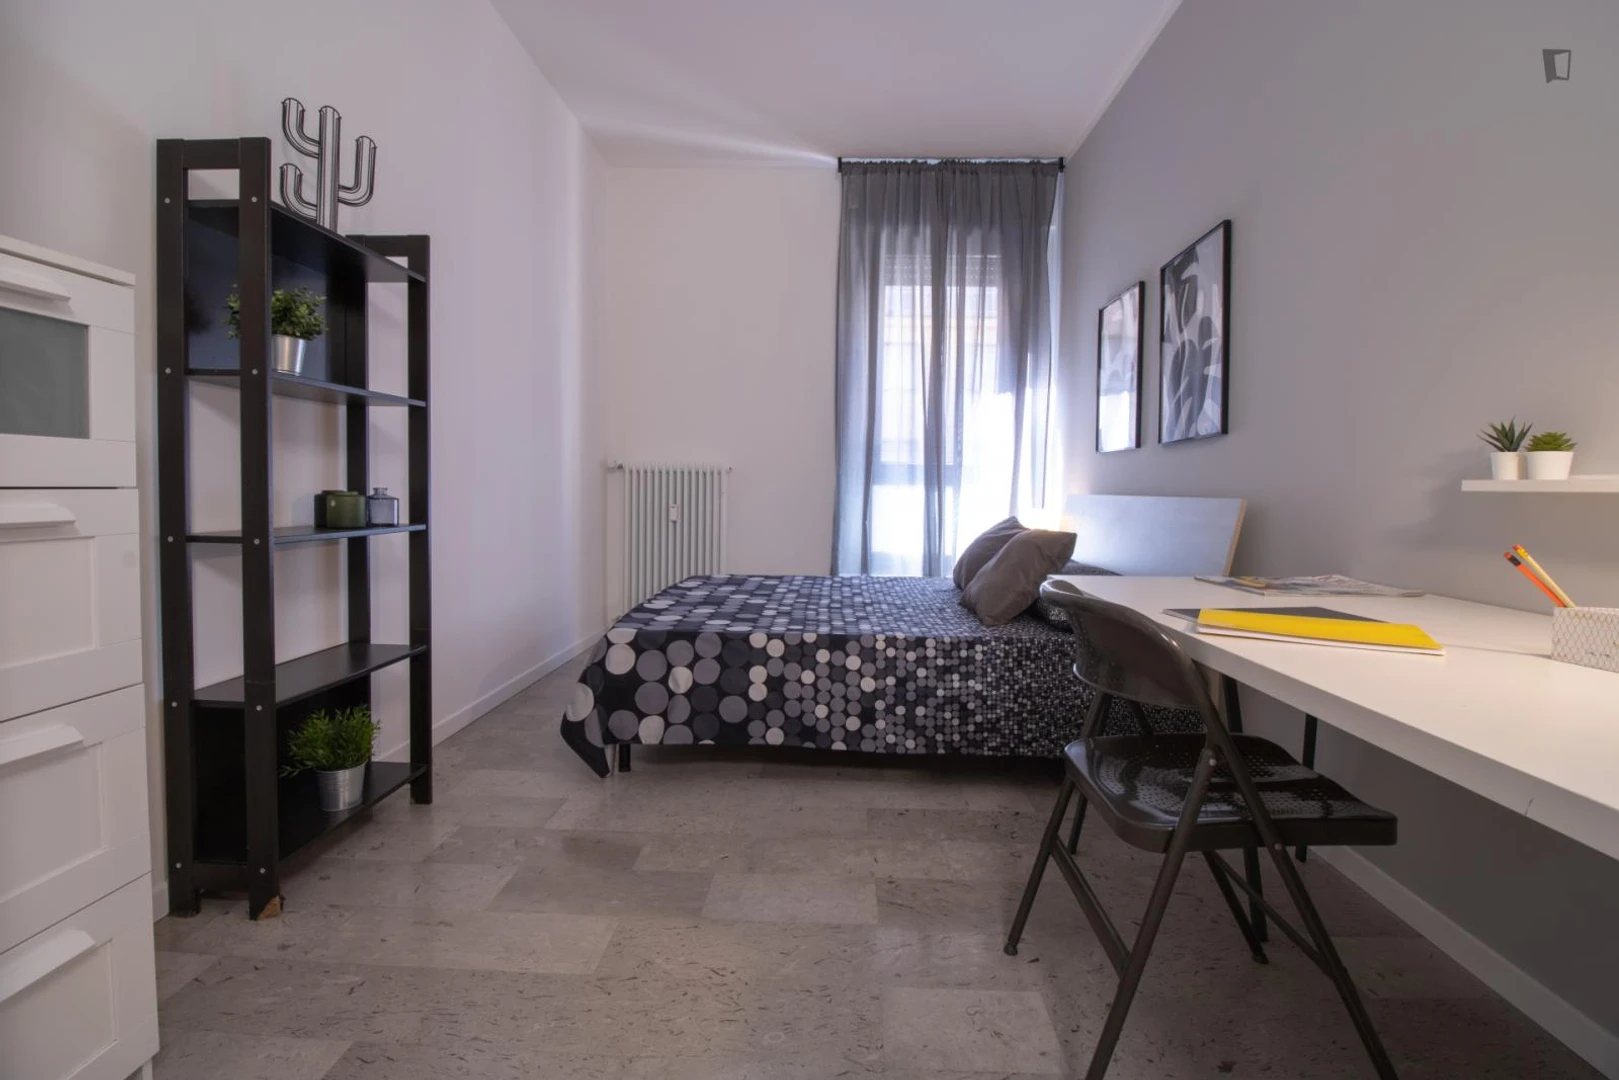 Alquiler de habitación en piso compartido en Vicenza